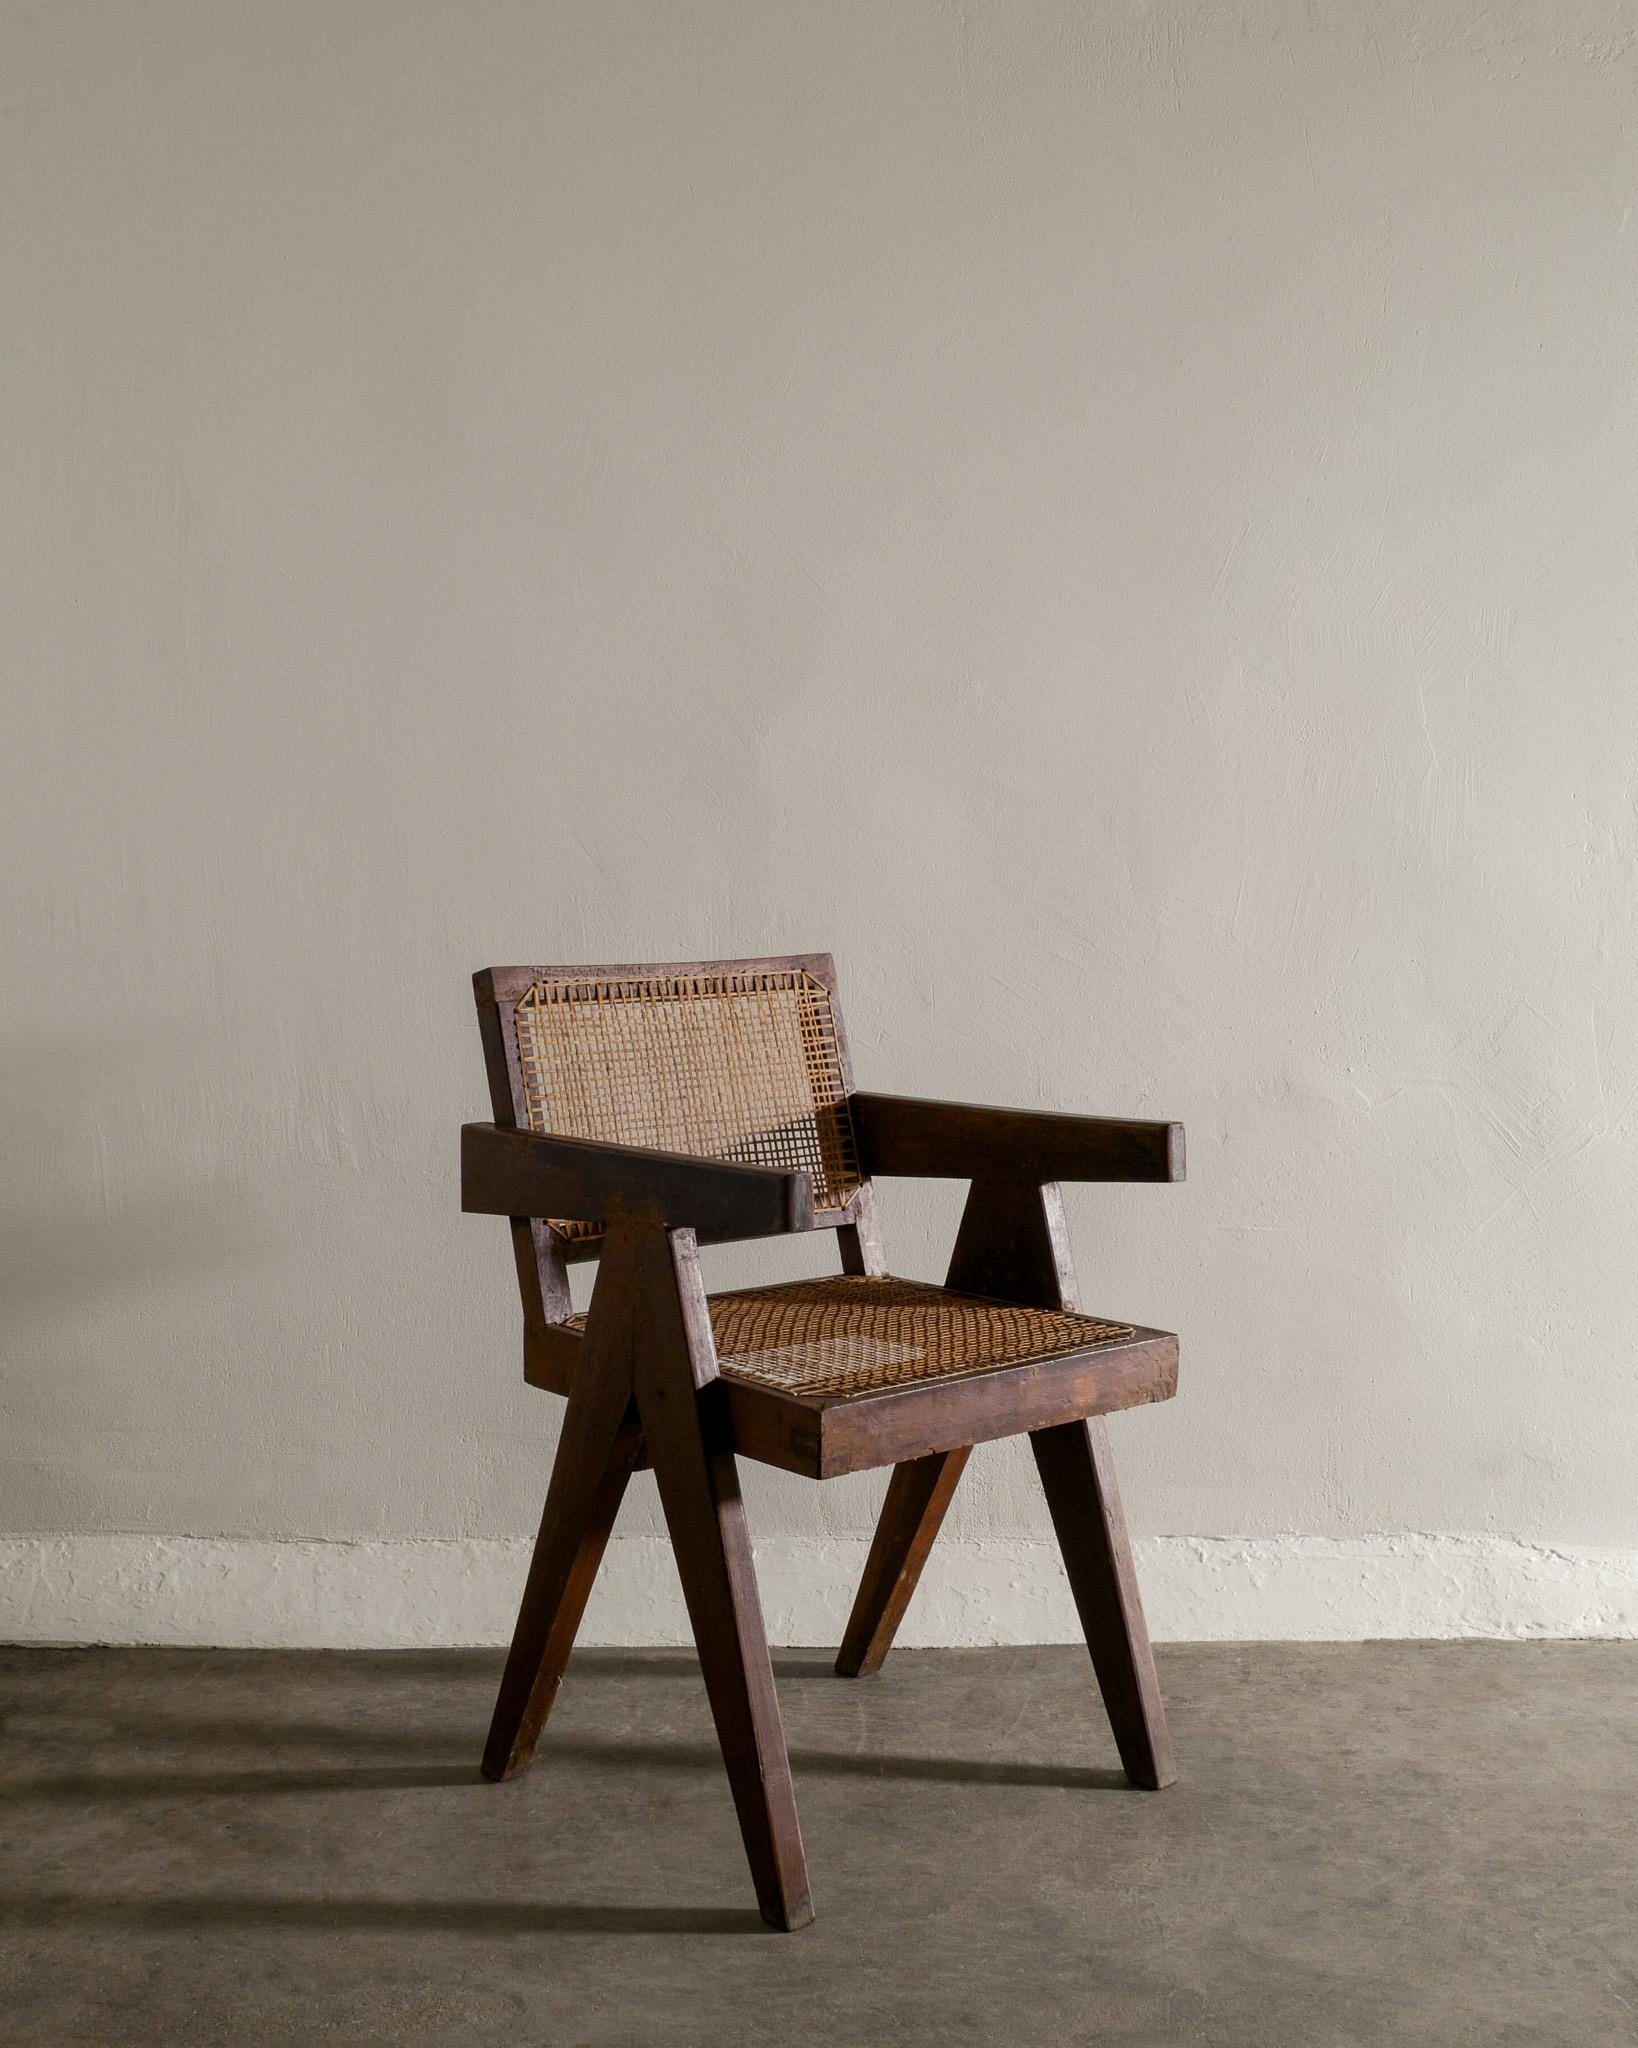 Rare chaise de bureau de milieu de siècle en teck massif teinté et rotin par Pierre Jeanneret / Le Corbusier pour leur projet Chandigarh en Inde dans les années 1950. En bon état vintage. Signé 